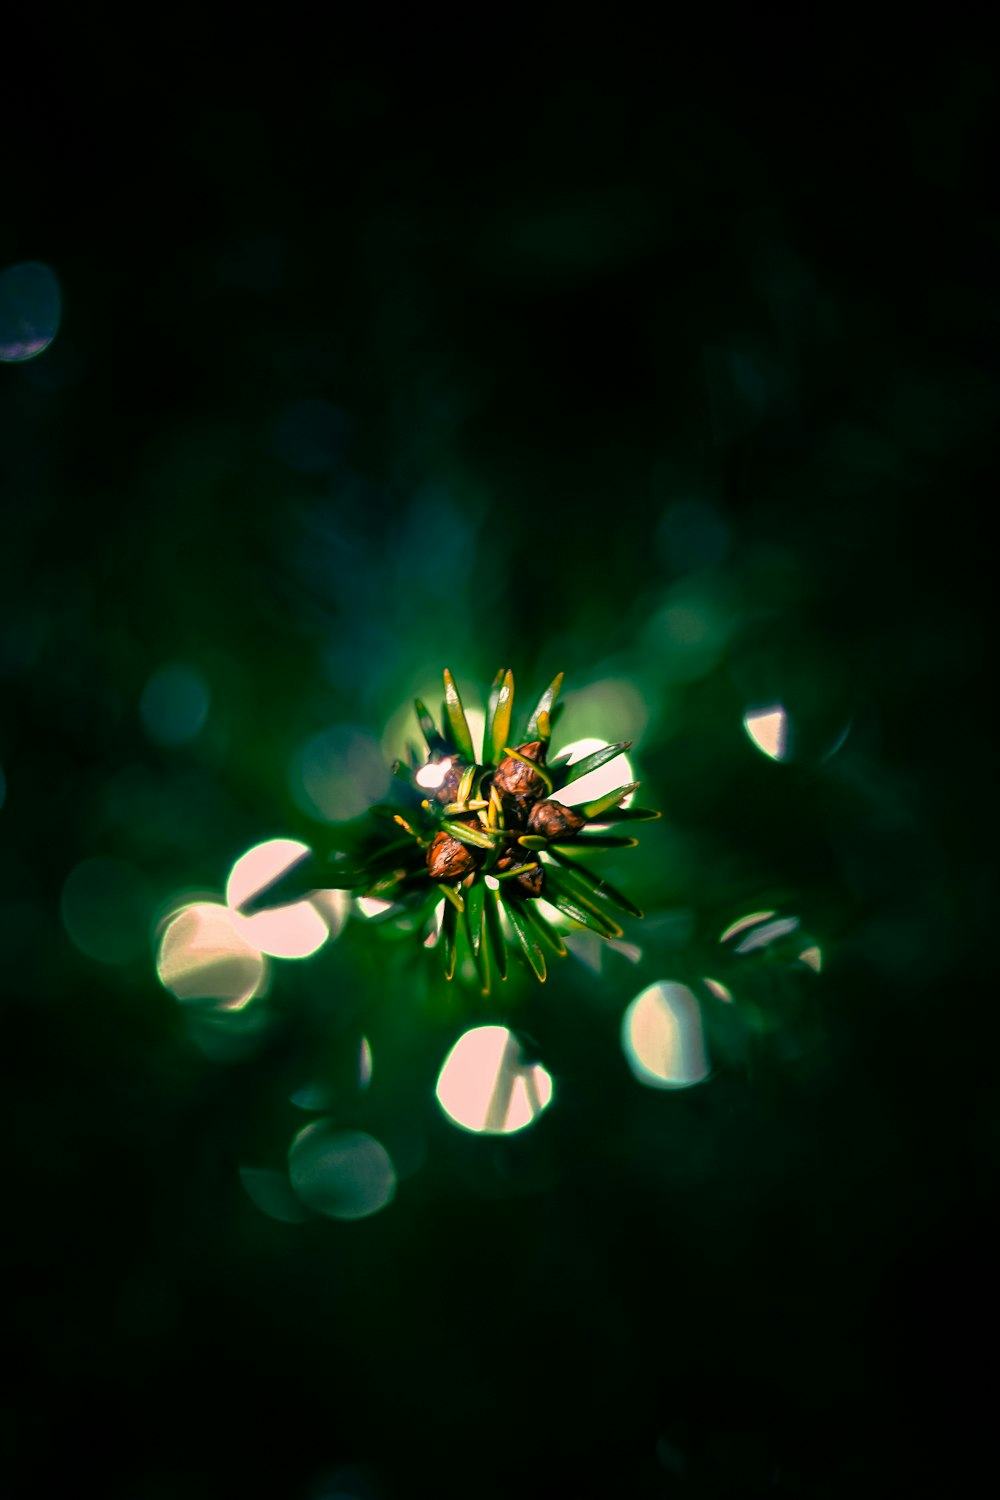 um close up de uma flor em um fundo escuro